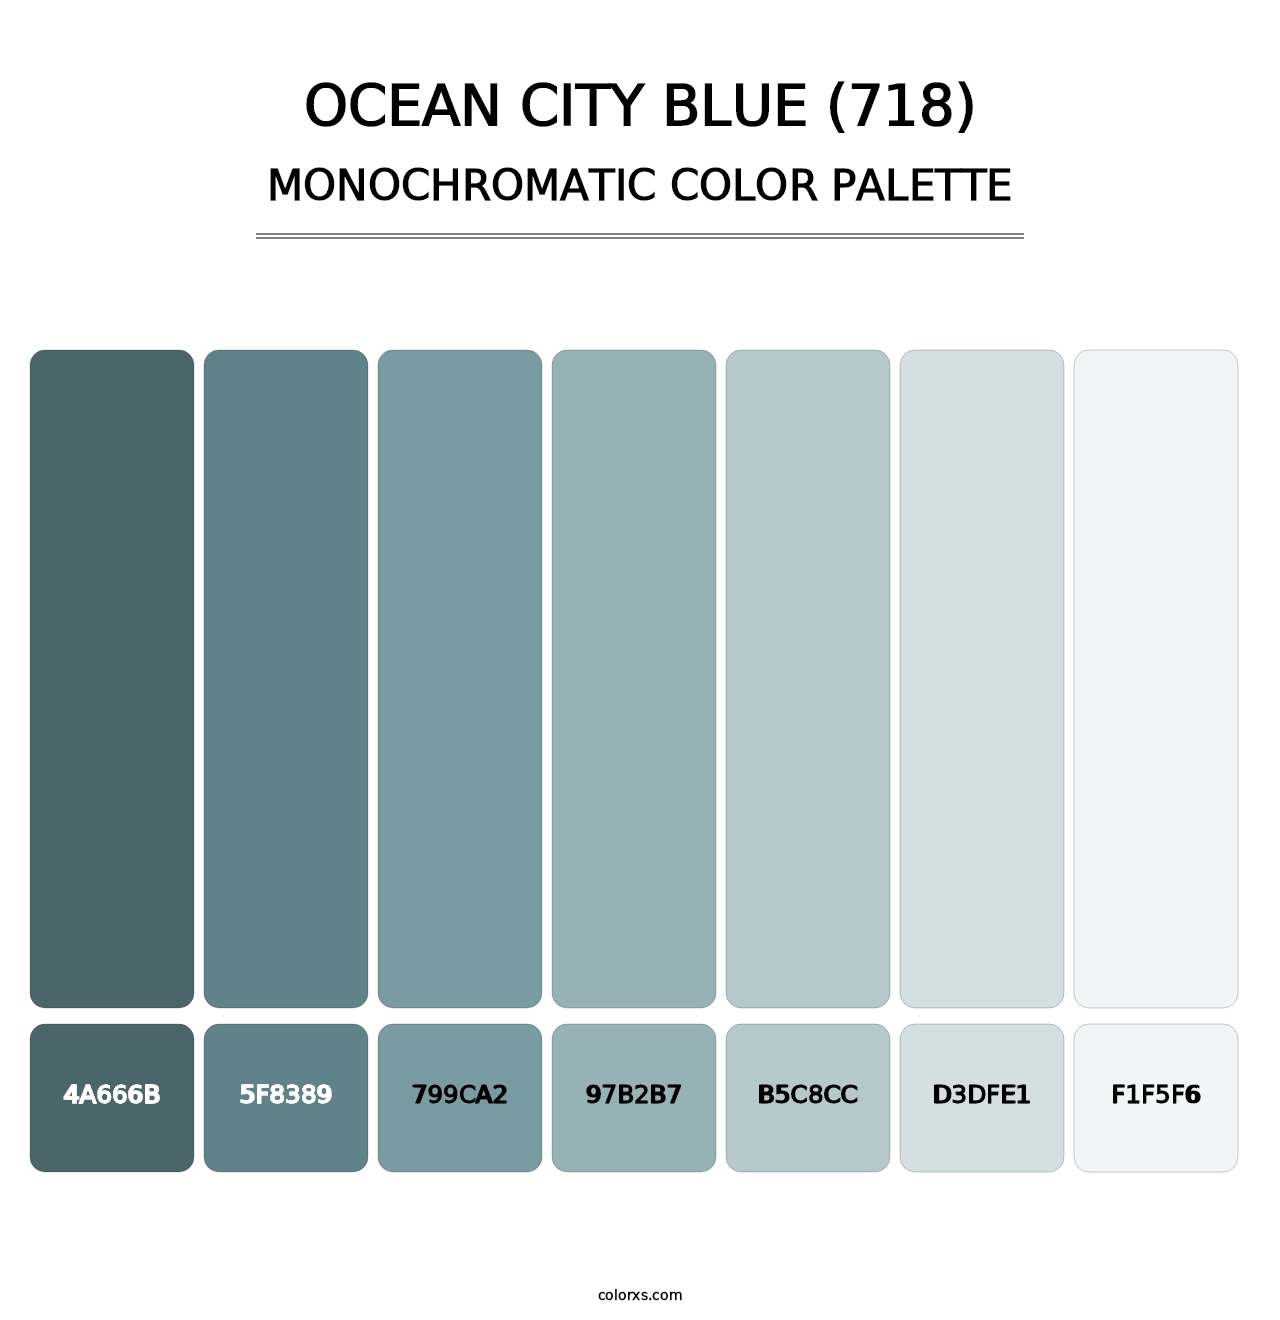 Ocean City Blue (718) - Monochromatic Color Palette